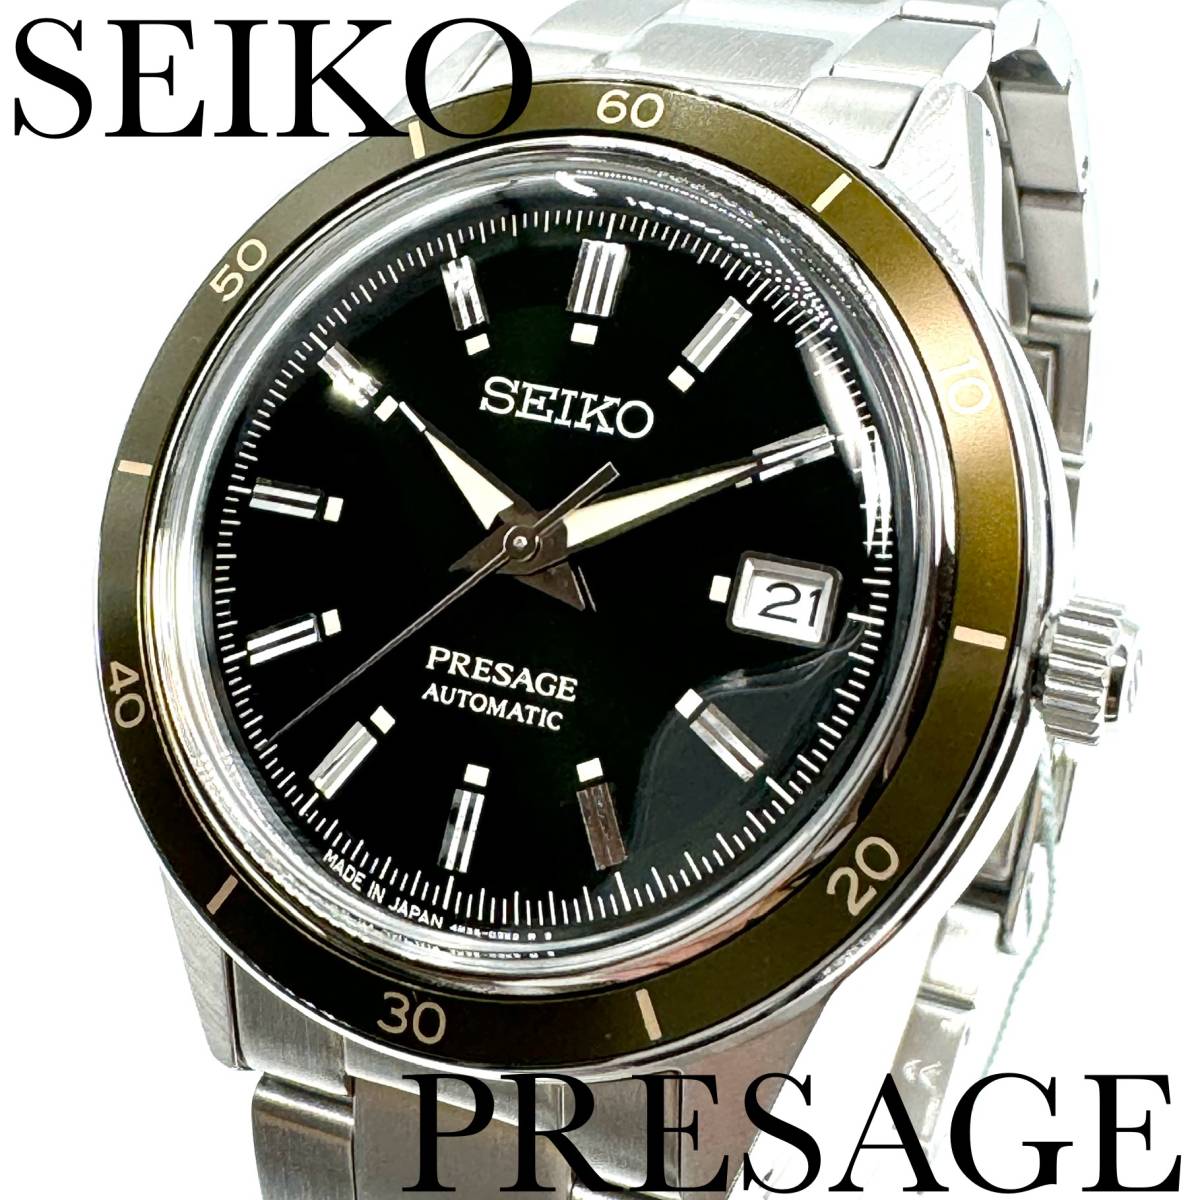 新品正規品『SEIKO PRESAGE』セイコー プレザージュ ヴィンテージスタイル 自動巻き腕時計 メンズ SARY195【送料無料】